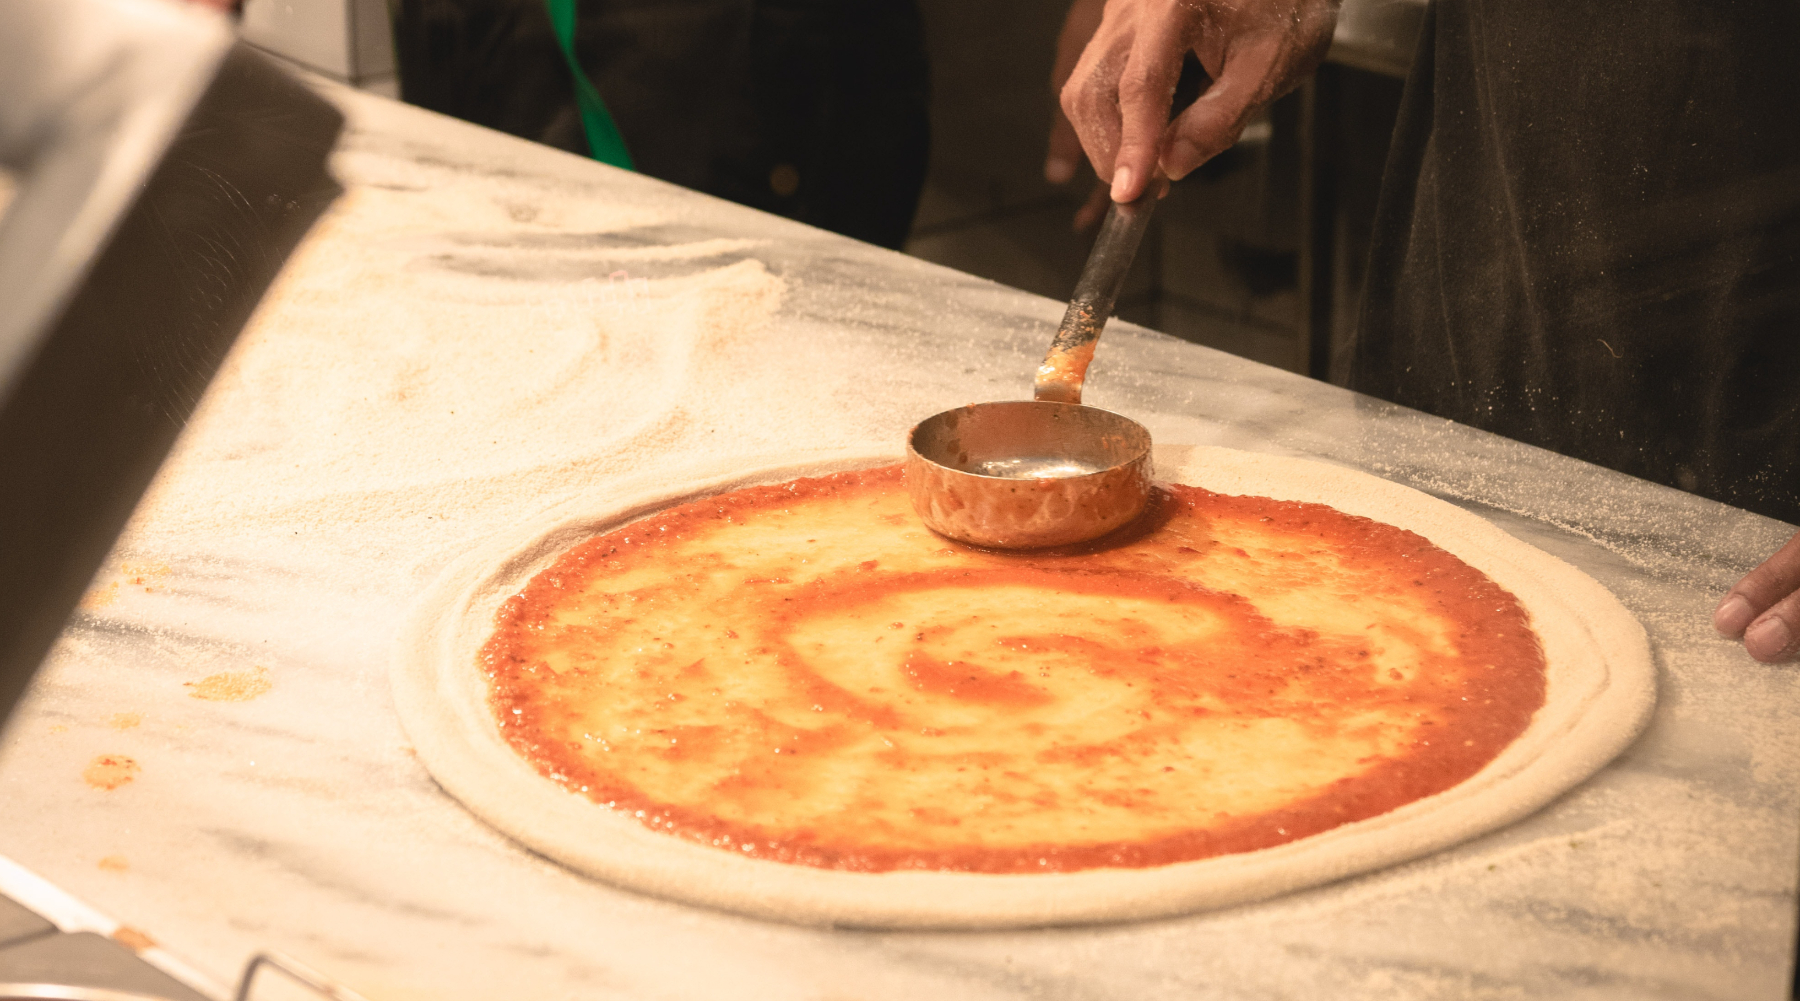 Donosimo vam recept za domaću pizza pitu koju će svi obožavati